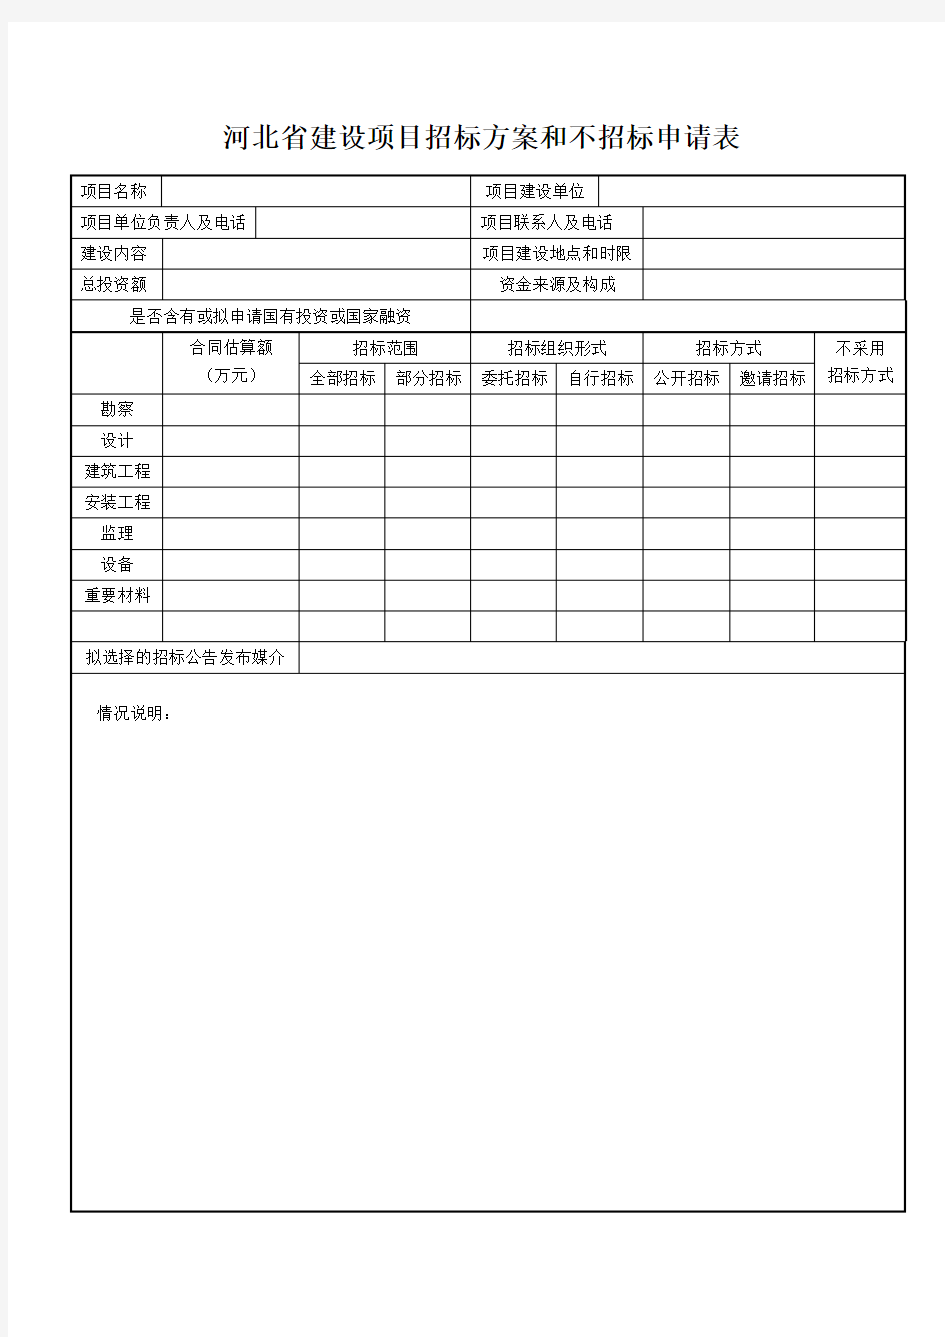 河北省建设项目招标方案和不招标申请表